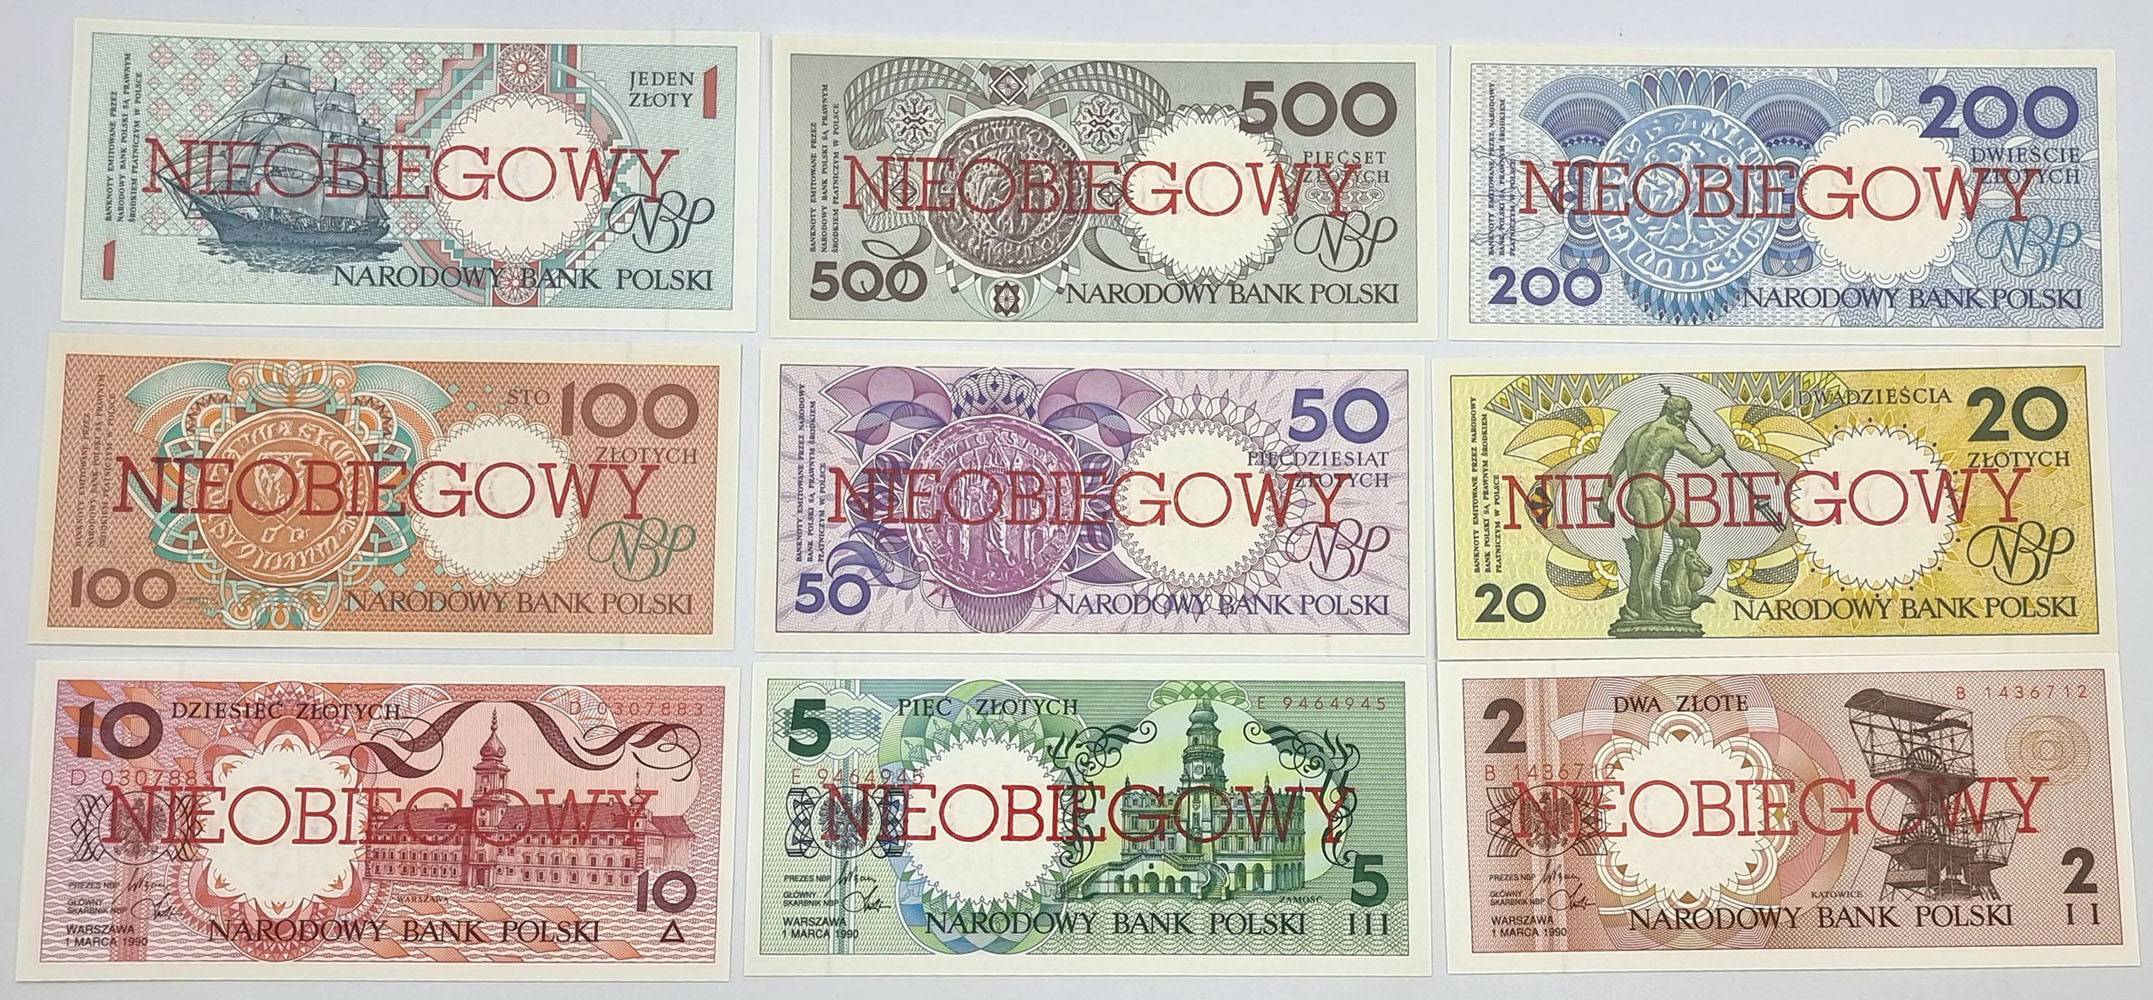 Miasta Polskie 1990 komplet banknotów 1-500 złotych - NIEOBIEGOWY